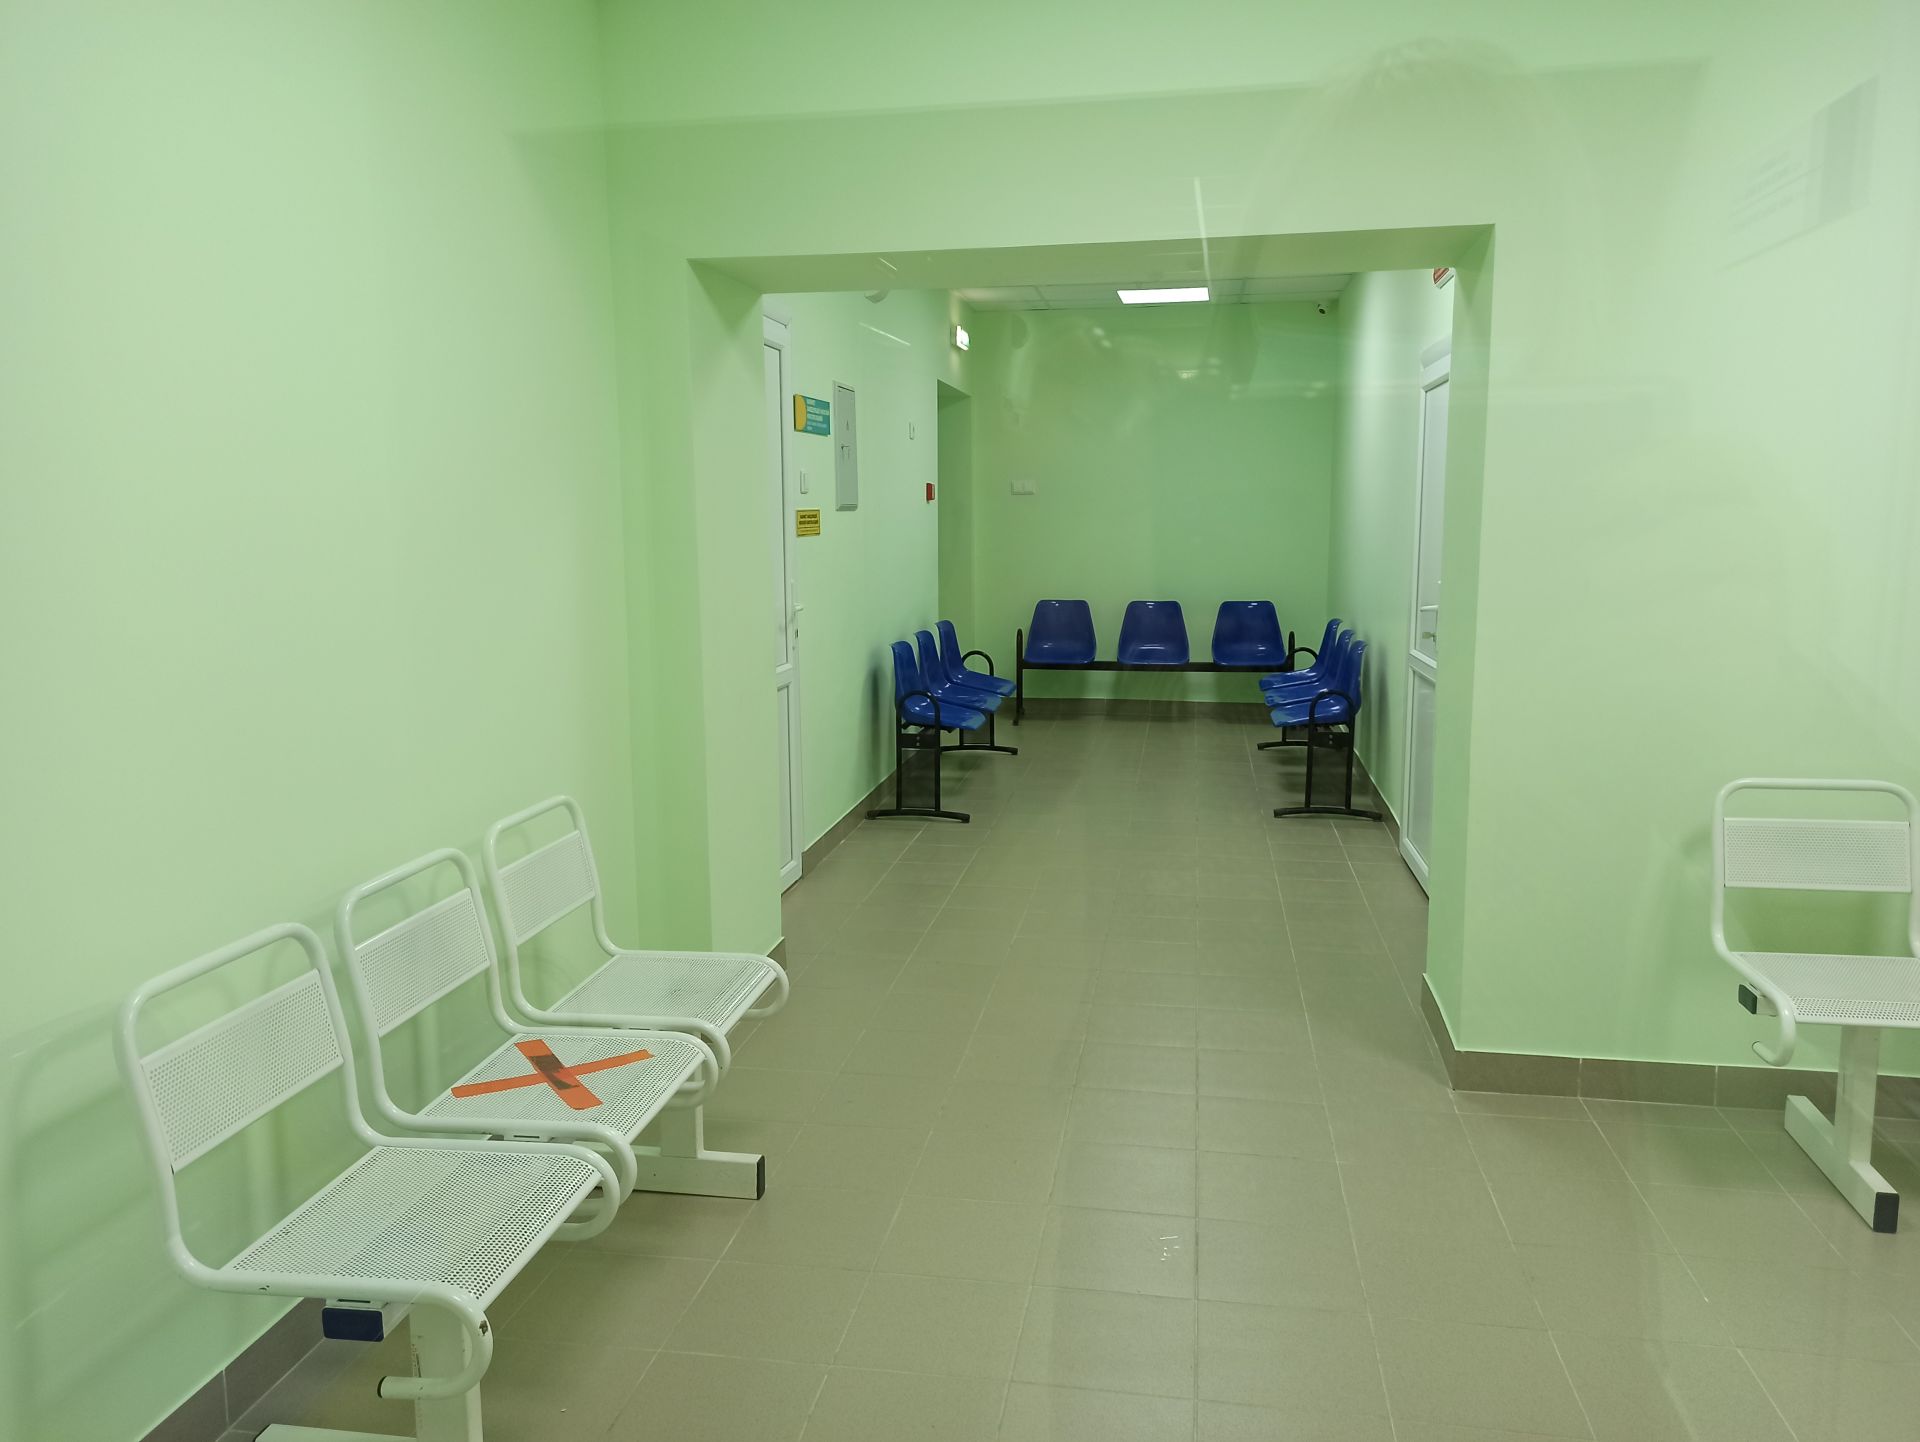 Глава Чистопольского района побывал в обновленной поликлинике «Водников» (фоторепортаж)